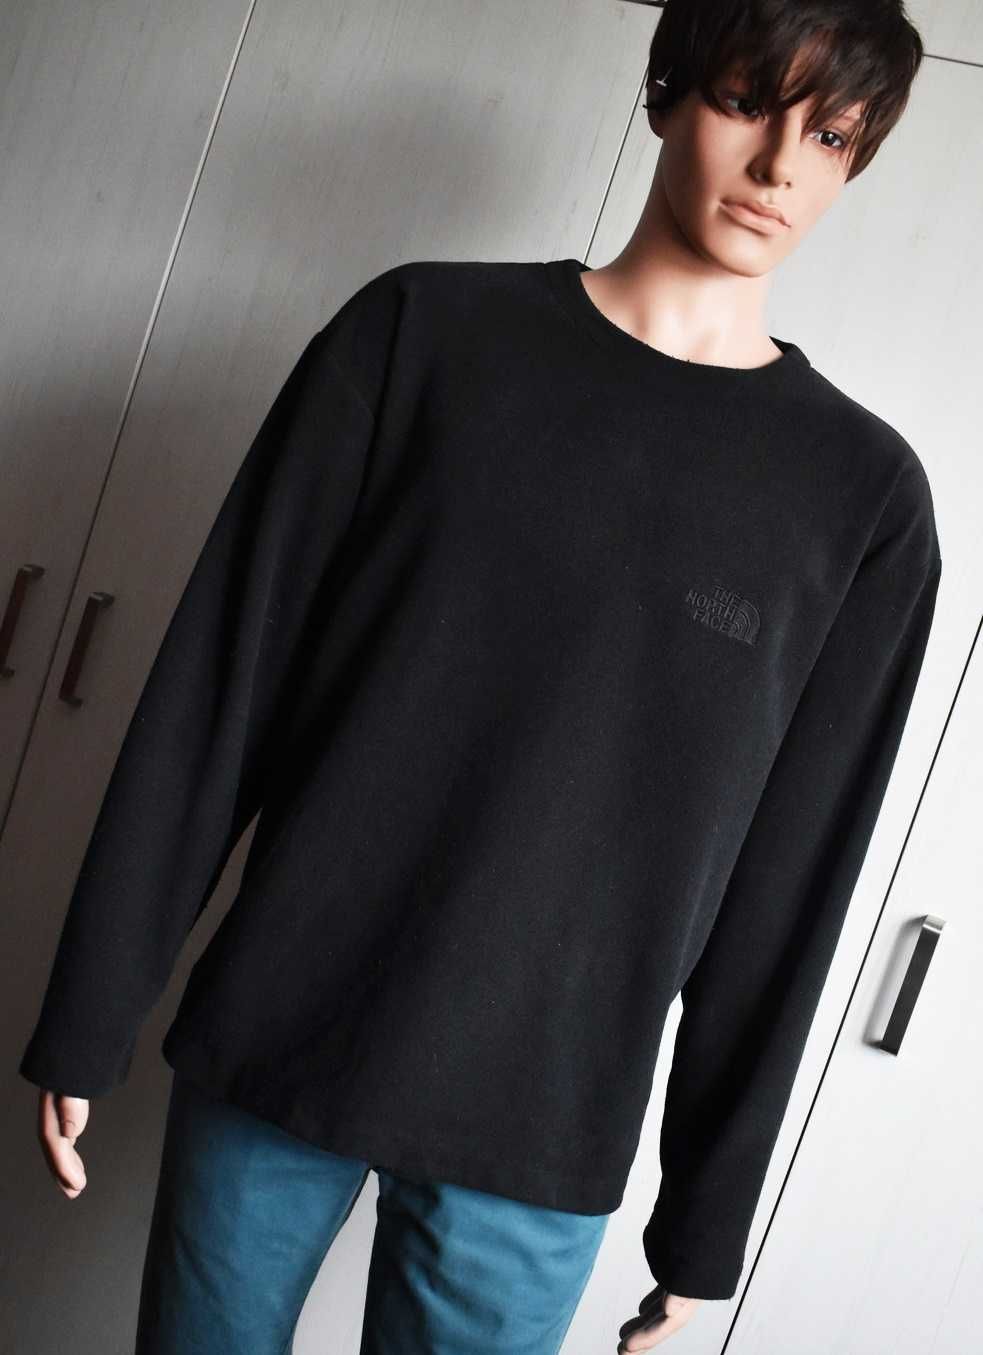 Bluza L XL prosta czarna sweatshirt The North Face męska sportowa